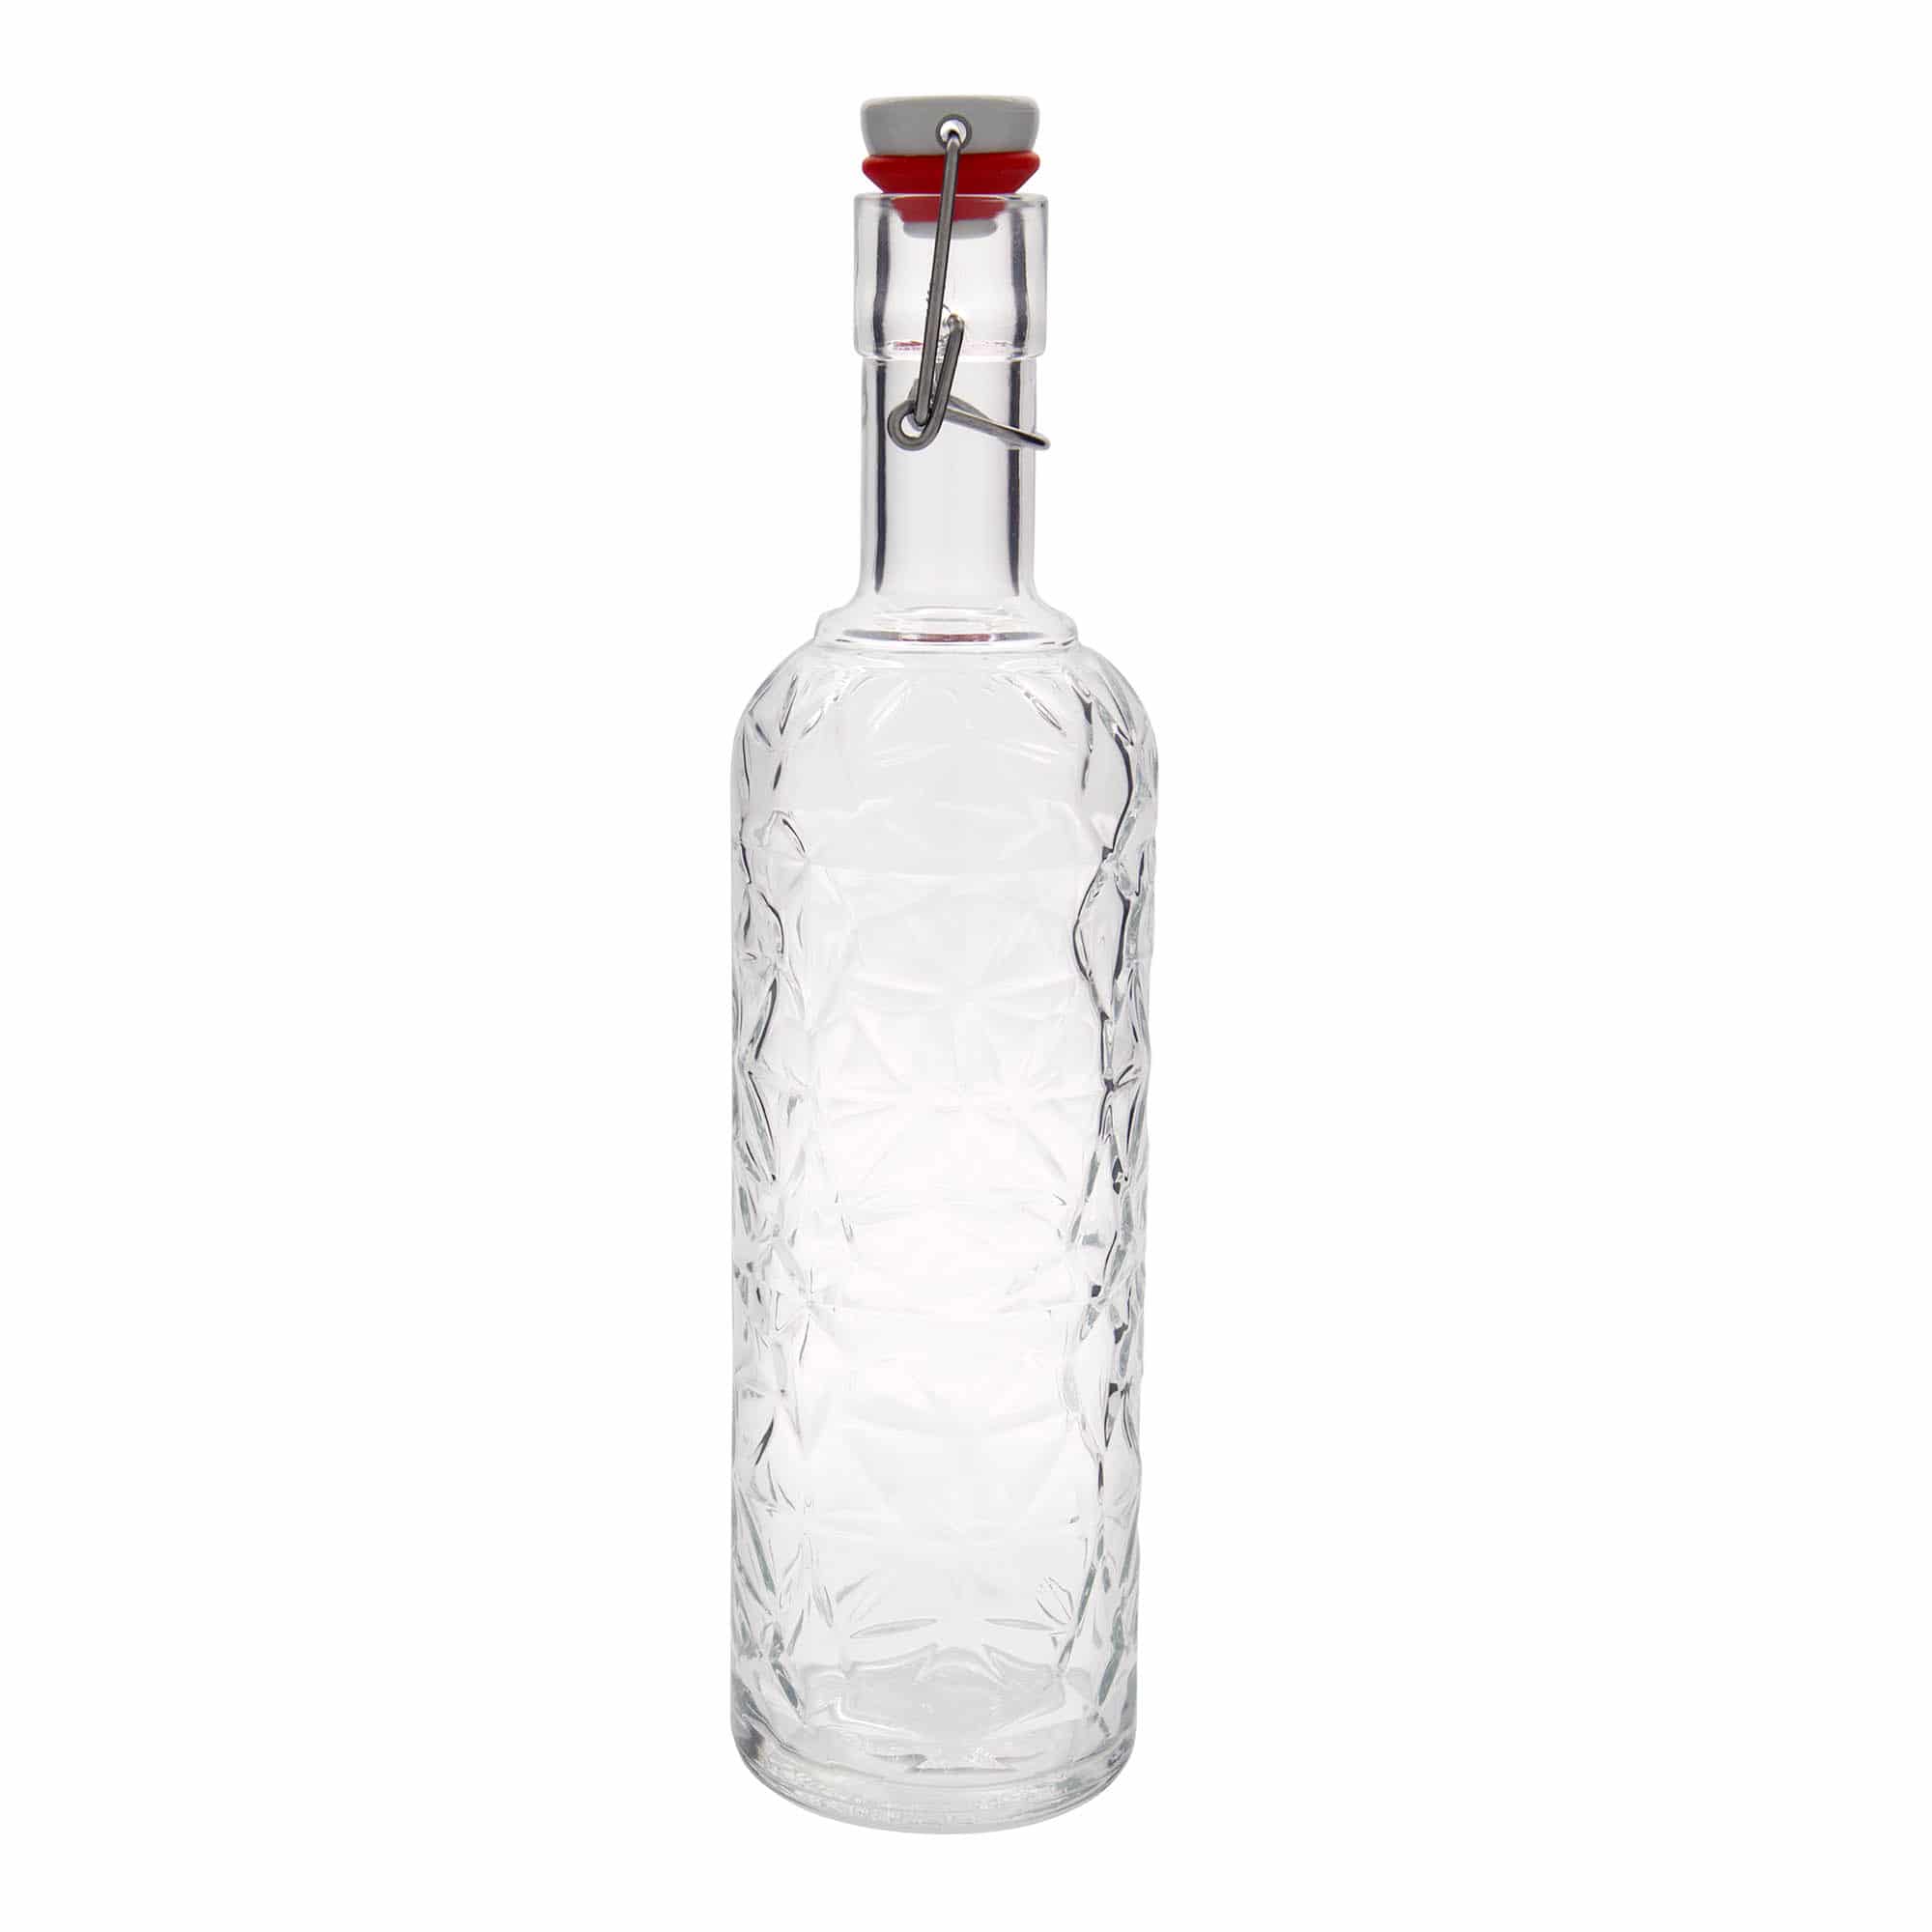 1,000 ml glass bottle 'Oriente', closure: swing top